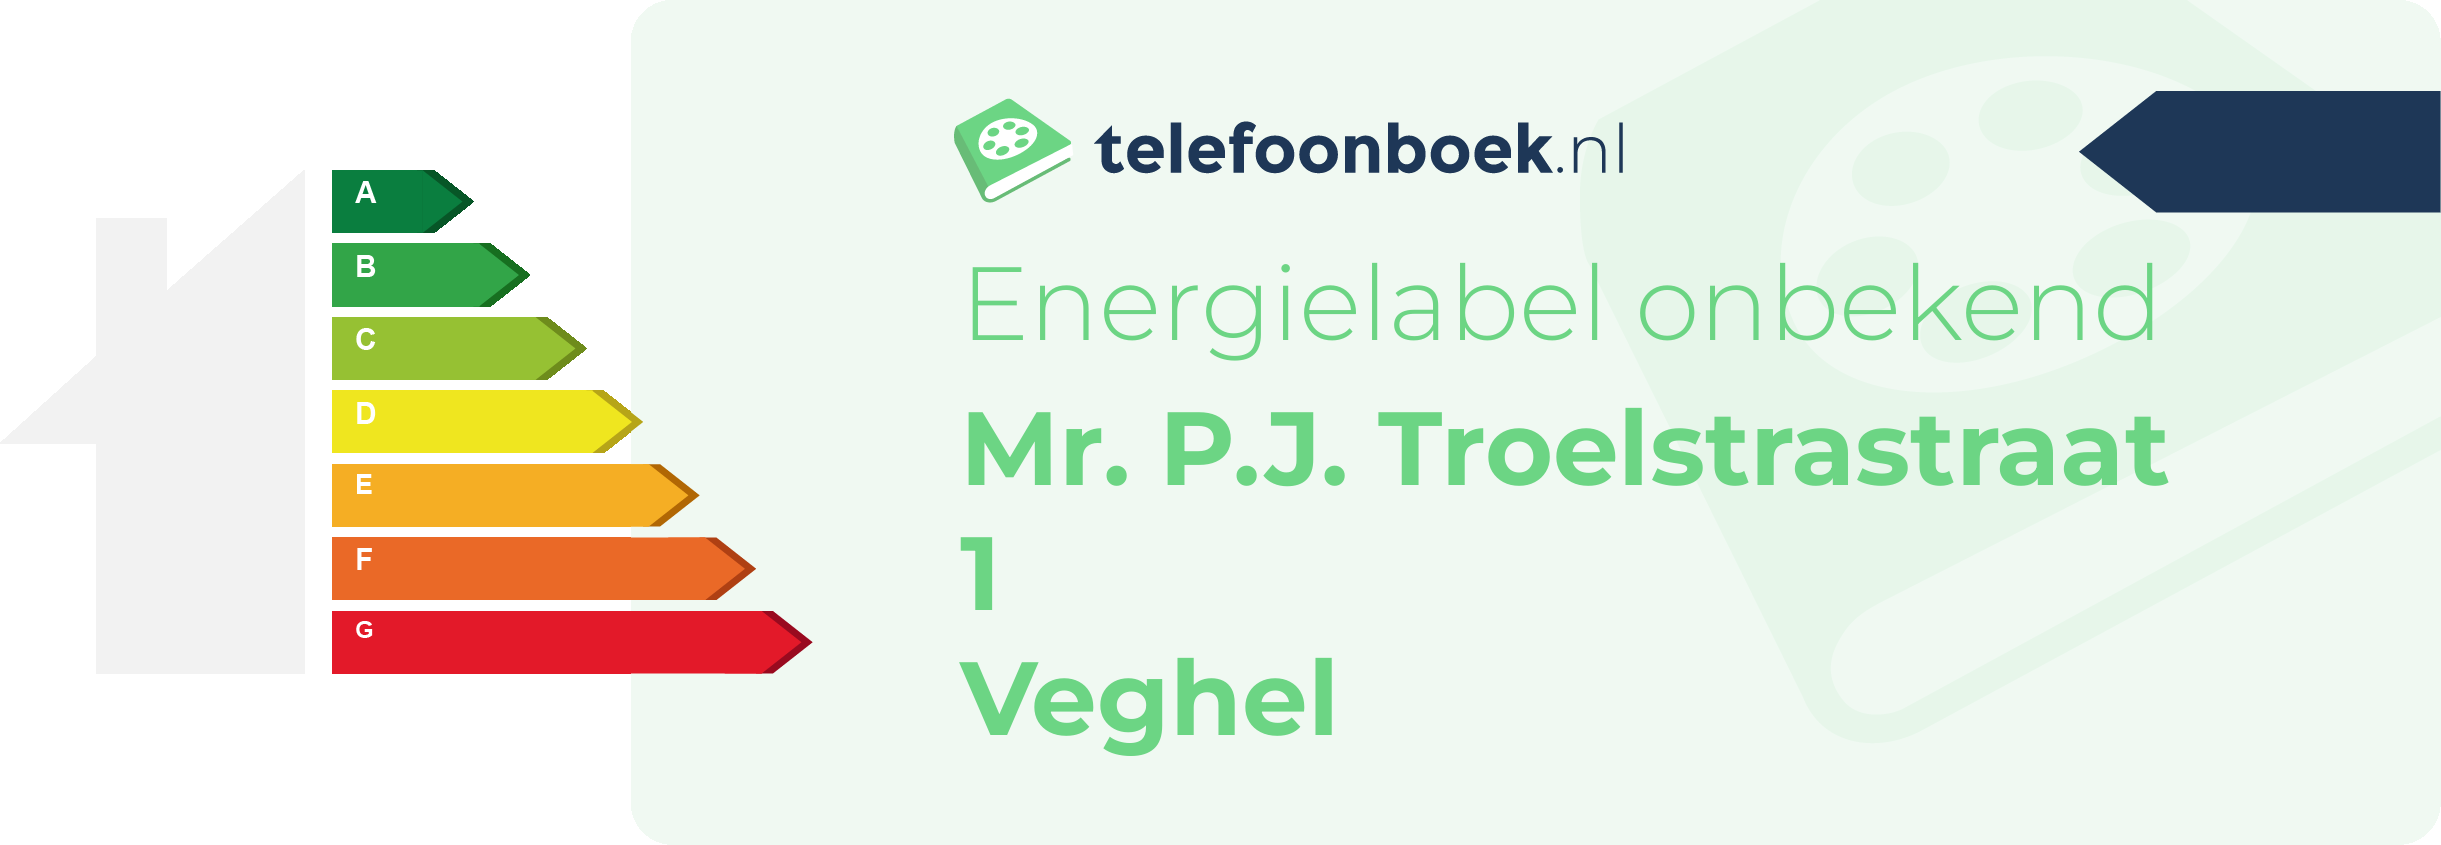 Energielabel Mr. P.J. Troelstrastraat 1 Veghel